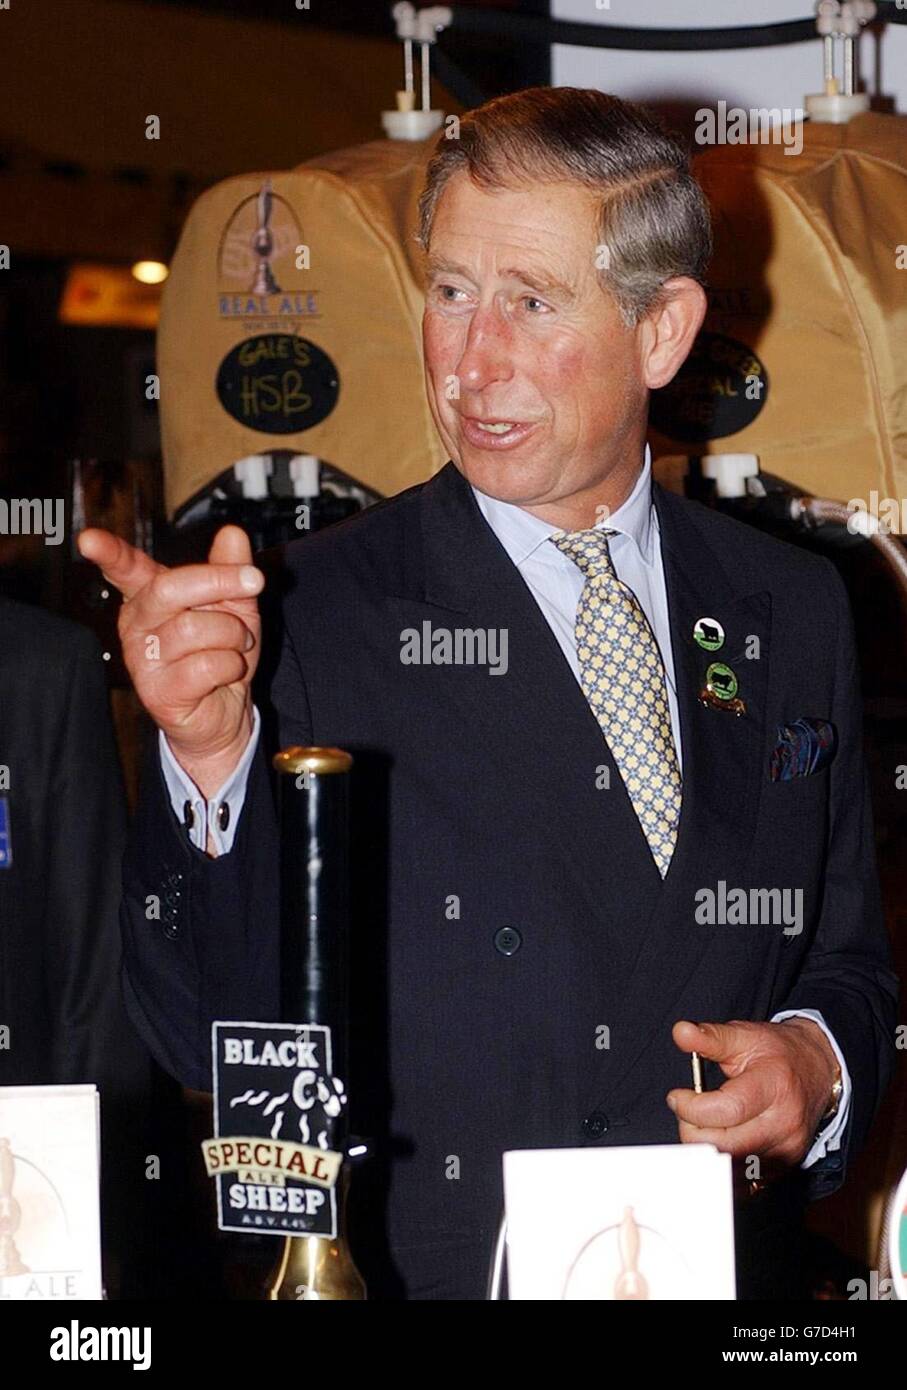 Der Prinz von Wales, reagiert, als er am Stand der Real Ale Society im Lingotto-Komplex in Turin, Italien, ankommt. Während eines Besuchs beim Food Festival „Salone Del Gusto“. Stockfoto